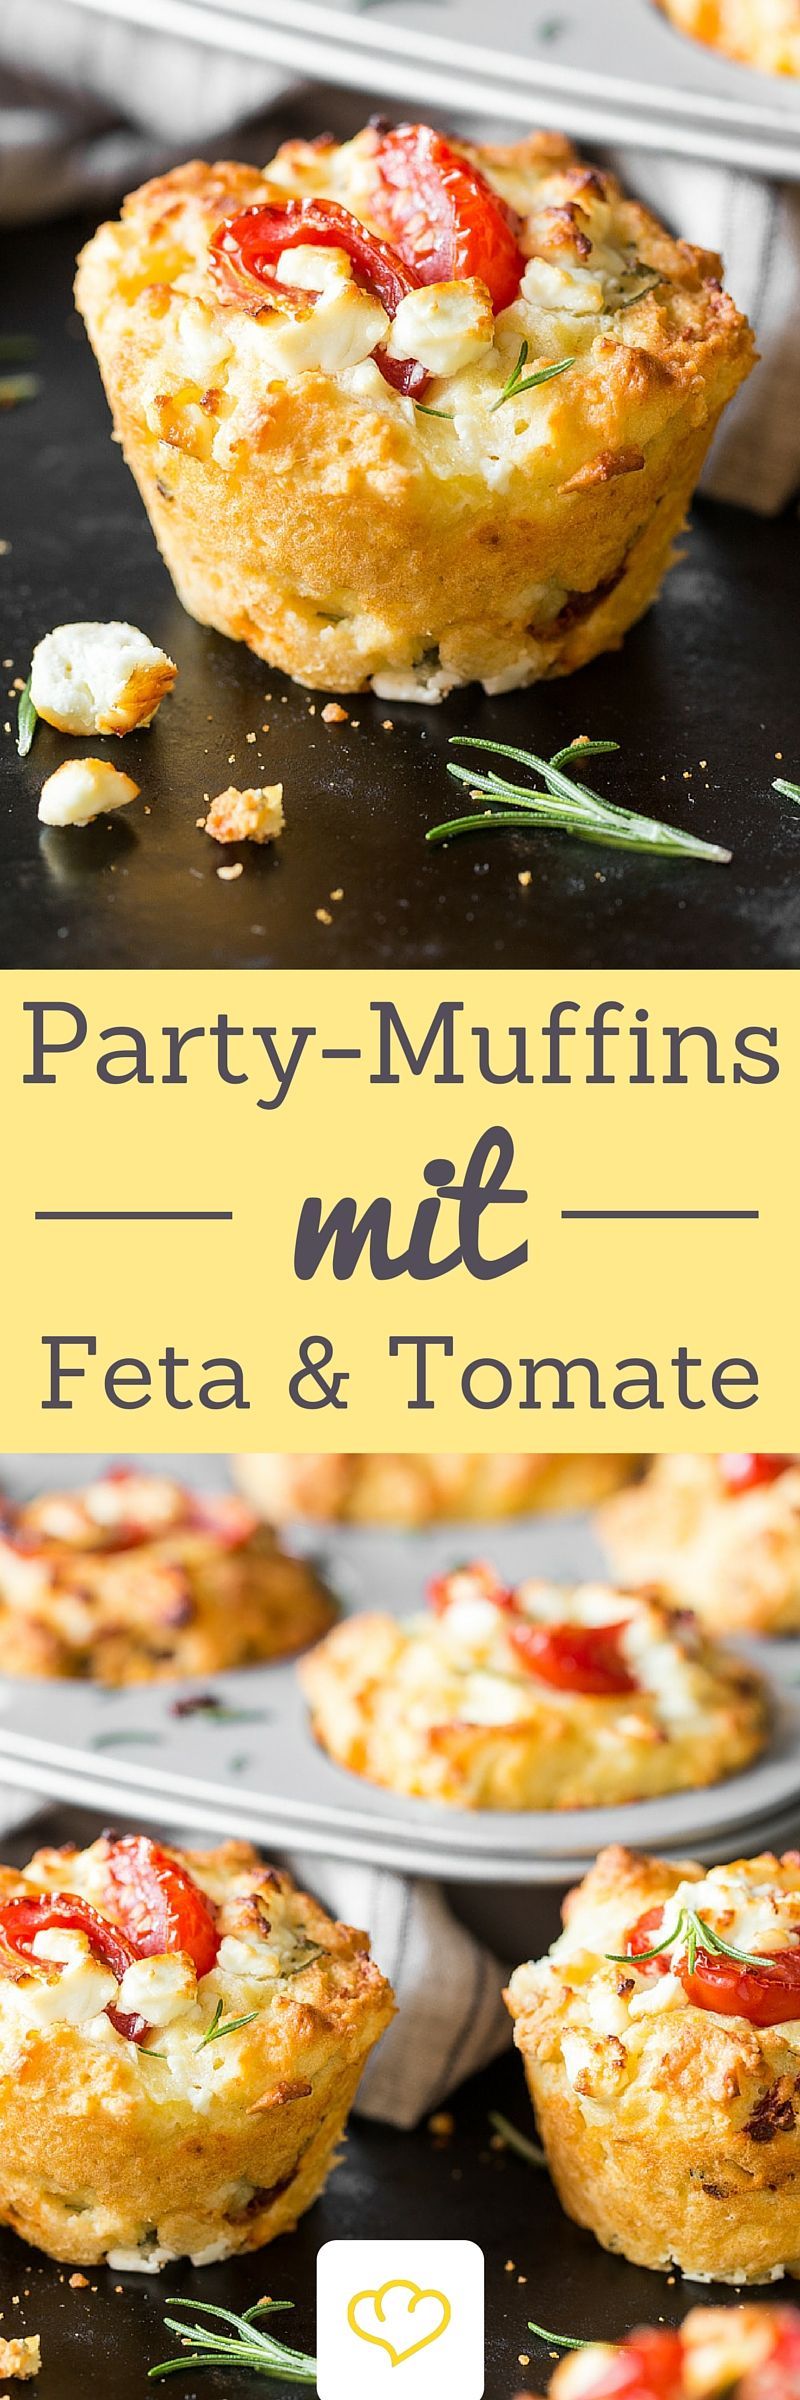 Der Hingucker auf deinem Partybuffet: Tomaten-Feta-Muffins! Denn Muffins können a